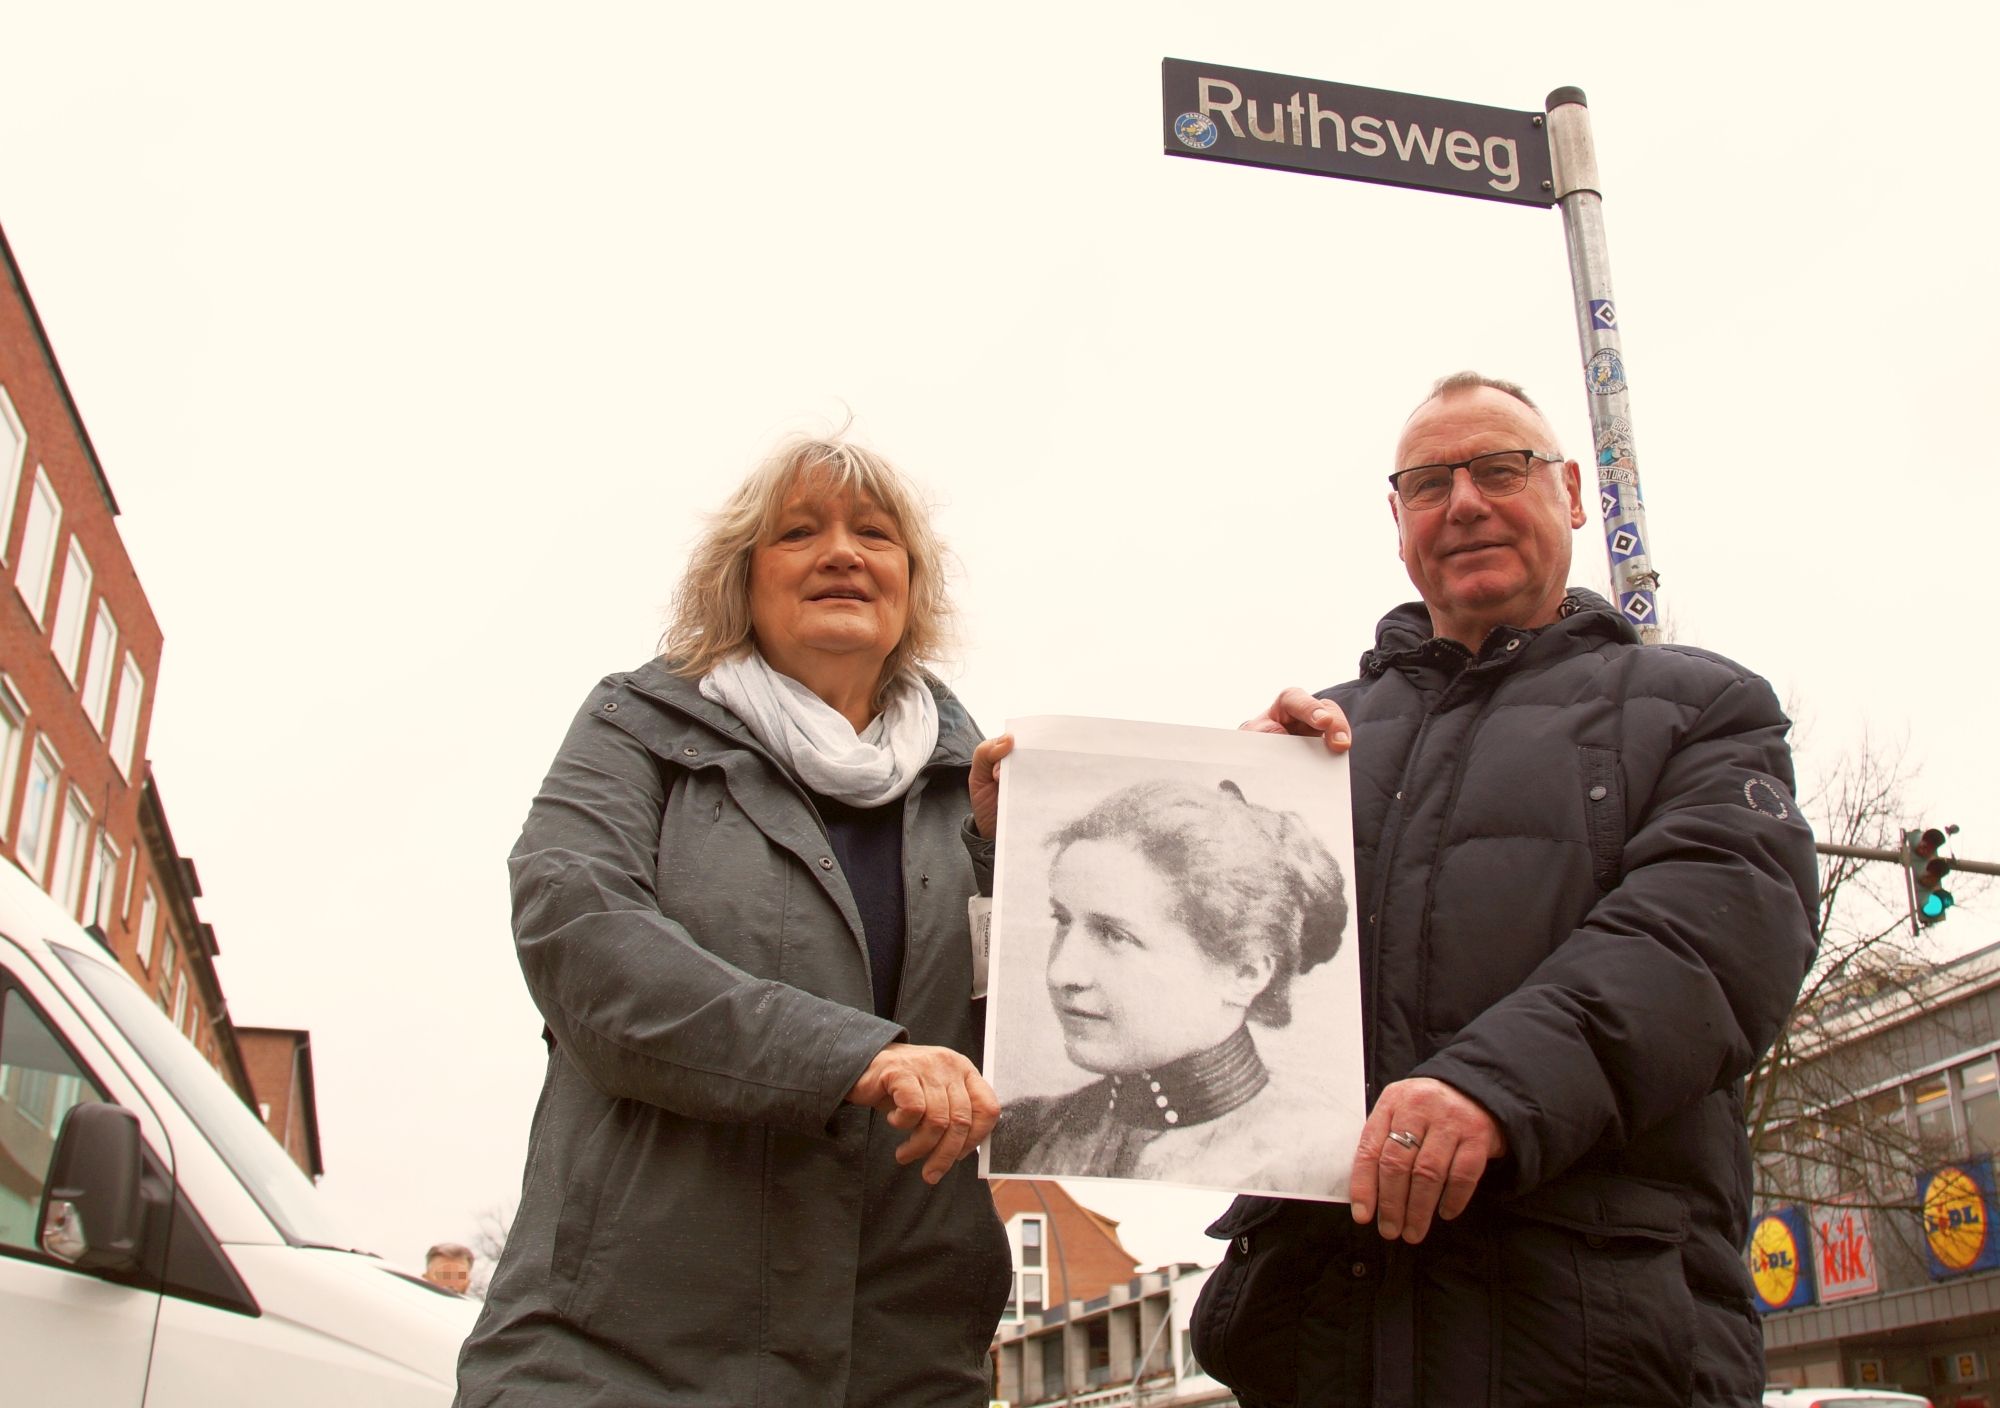 Beate Seelis (Grüne) und Rüdiger Wendt (SPD) mit einem Foto von Amelie Ruths am Ruthsweg in Barmbek.